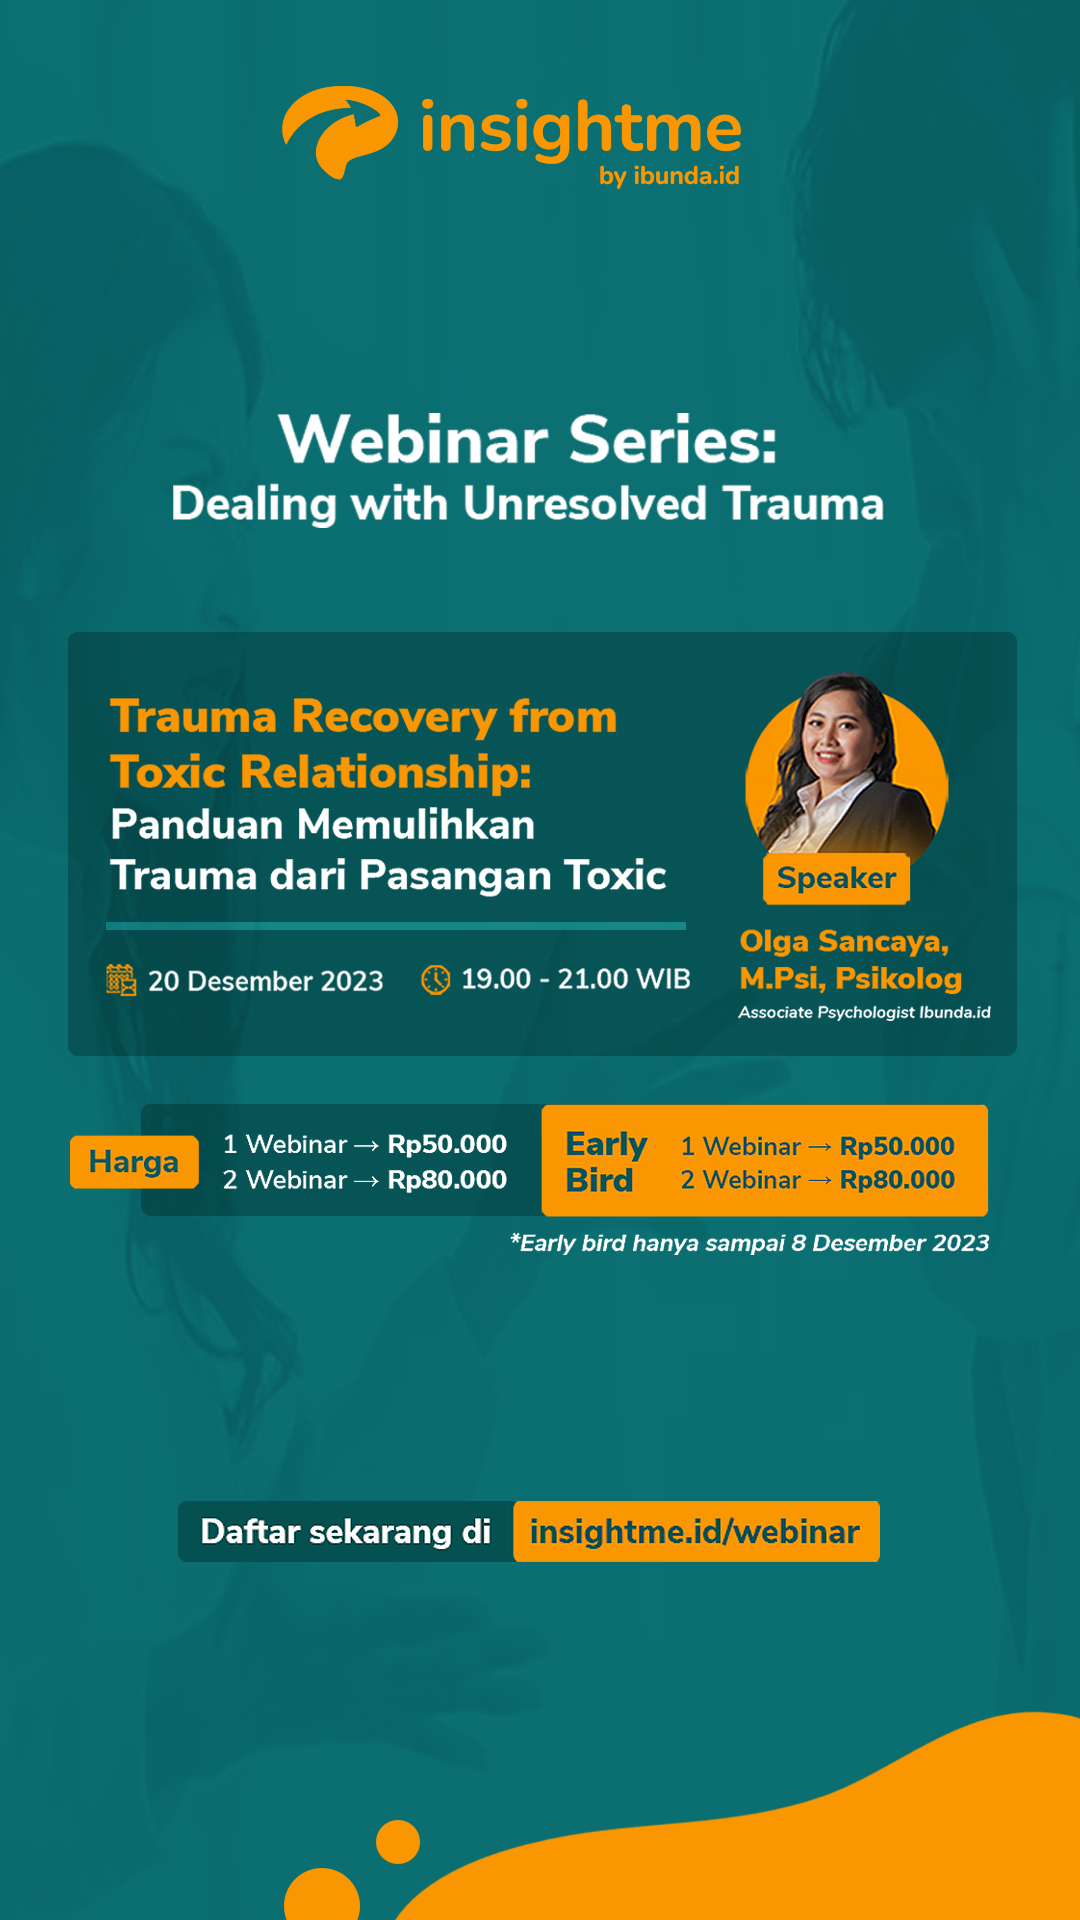 Trauma Recovery from Toxic Relationship: Panduan Memulihkan Trauma dari Pasangan Toxic